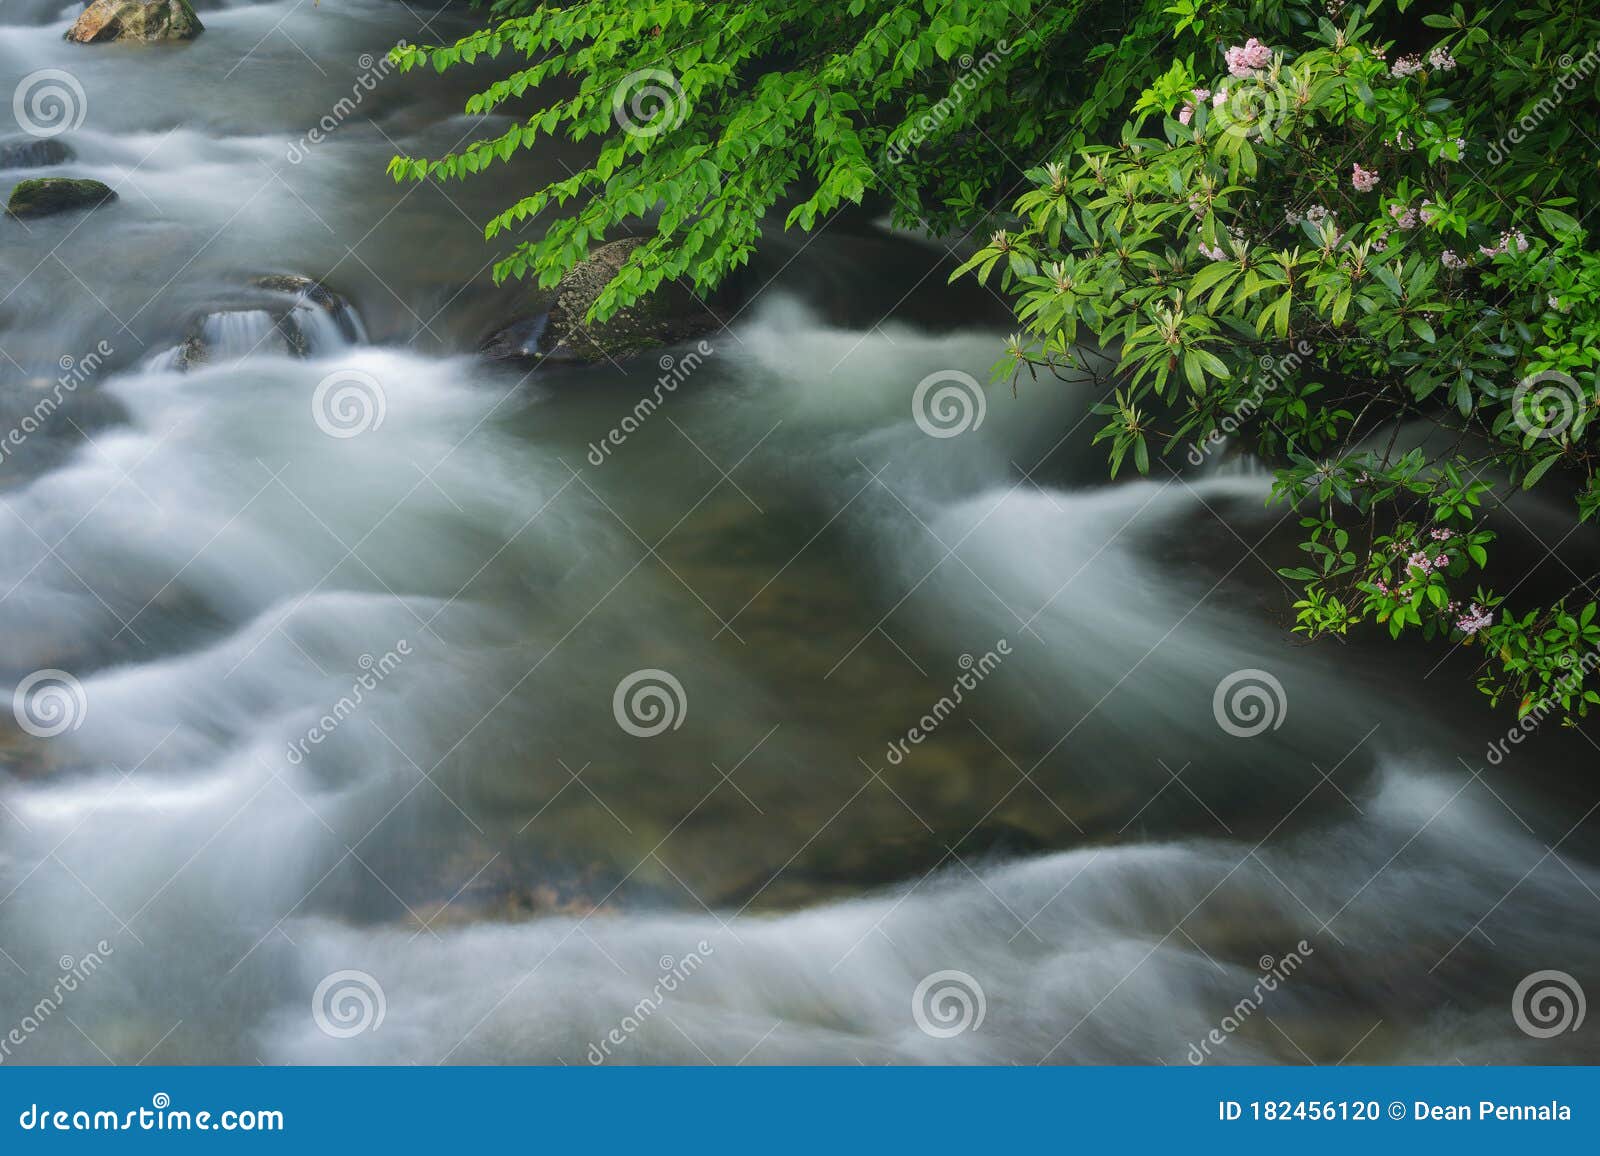 oconaluftee river with mountain laurel